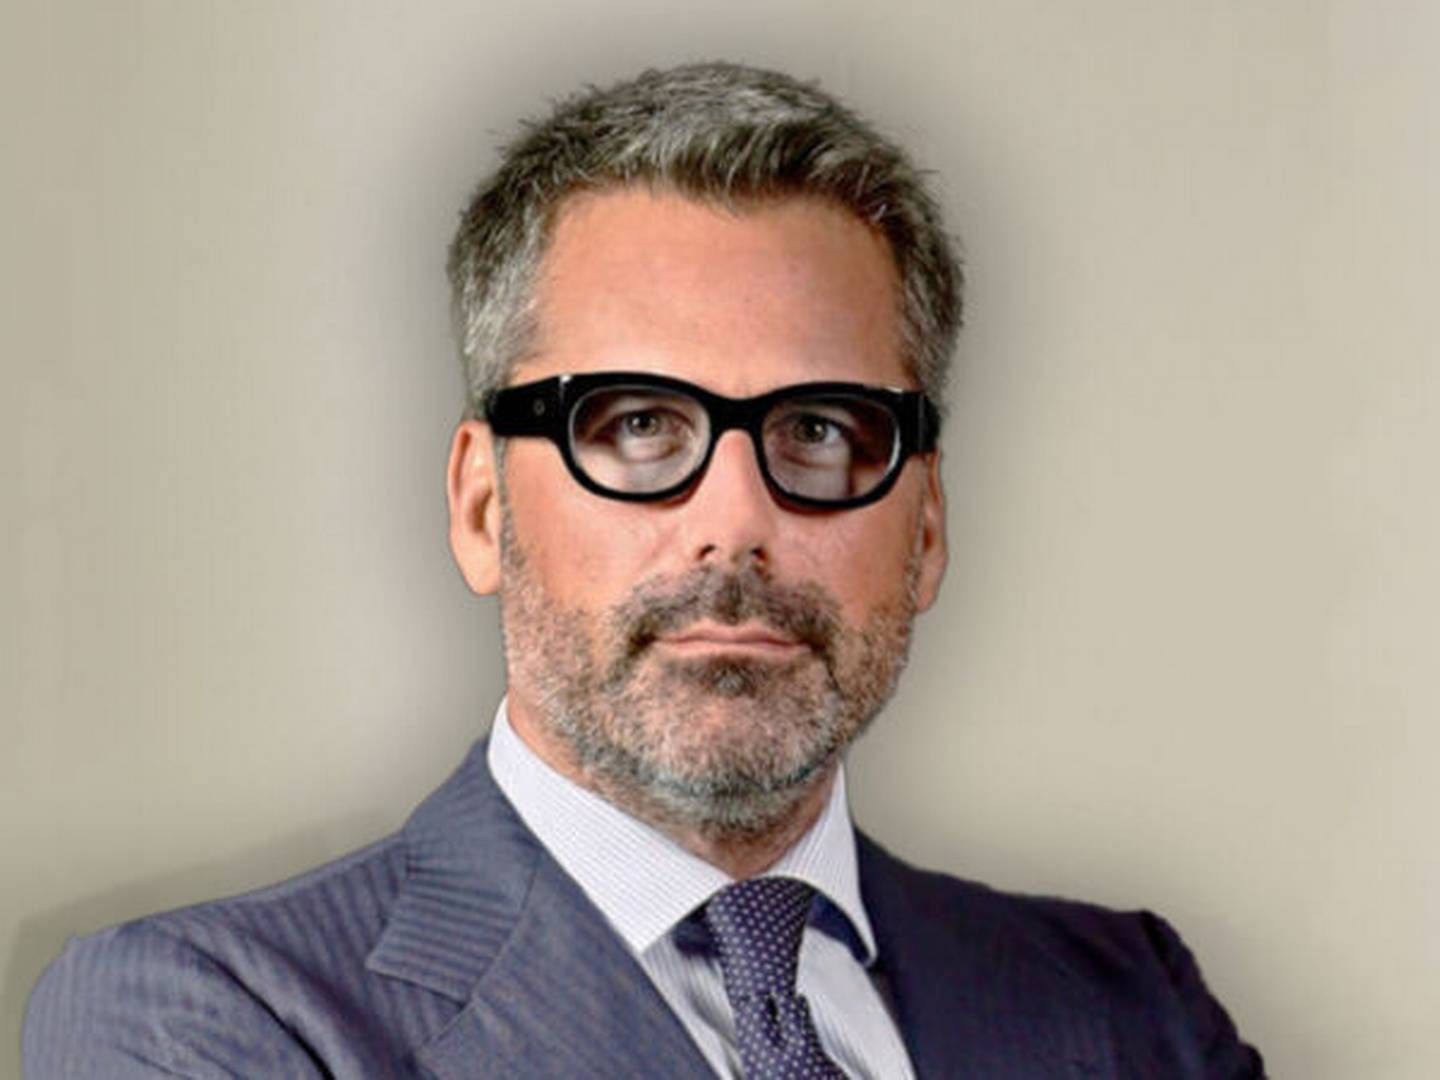 Emanuele Lauro er adm. direktør i Scorpio Holdings på vegne af Lauro-familien.